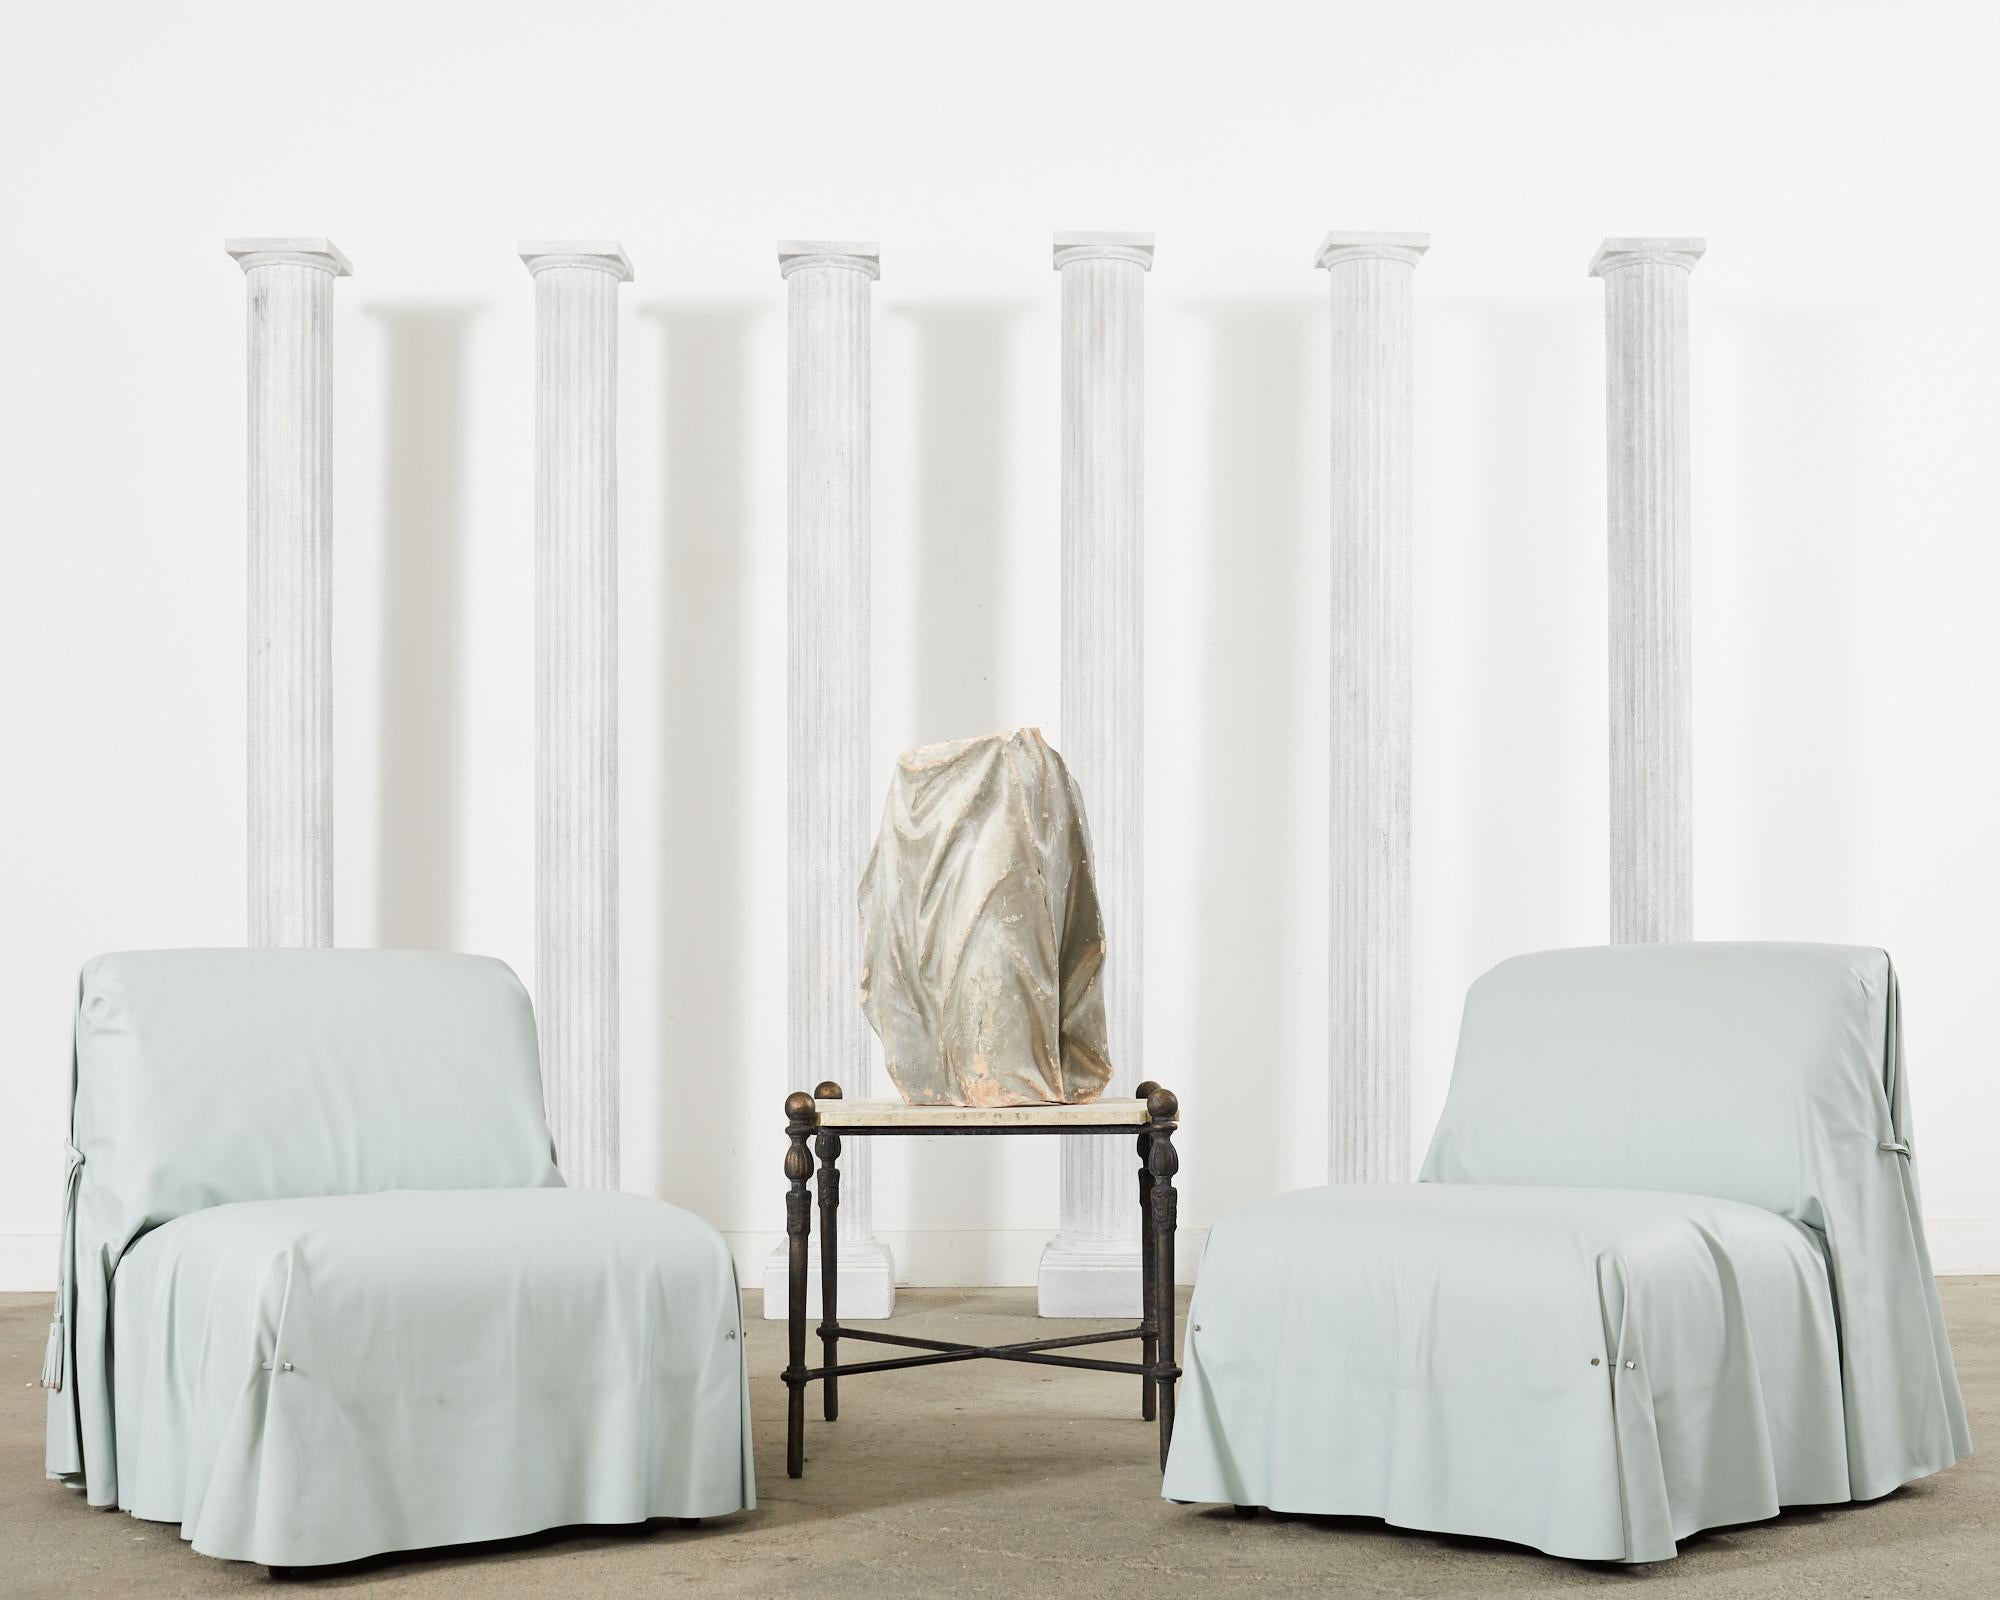 Sublime ensemble de six rares chaises longues ou slippers italiennes Fendi Casa Tunica circa 2015. Les chaises sur mesure sont recouvertes d'un cuir bleu arctique chic, doux et souple. Le cuir ajusté est drapé sur les chaises et délicatement plissé